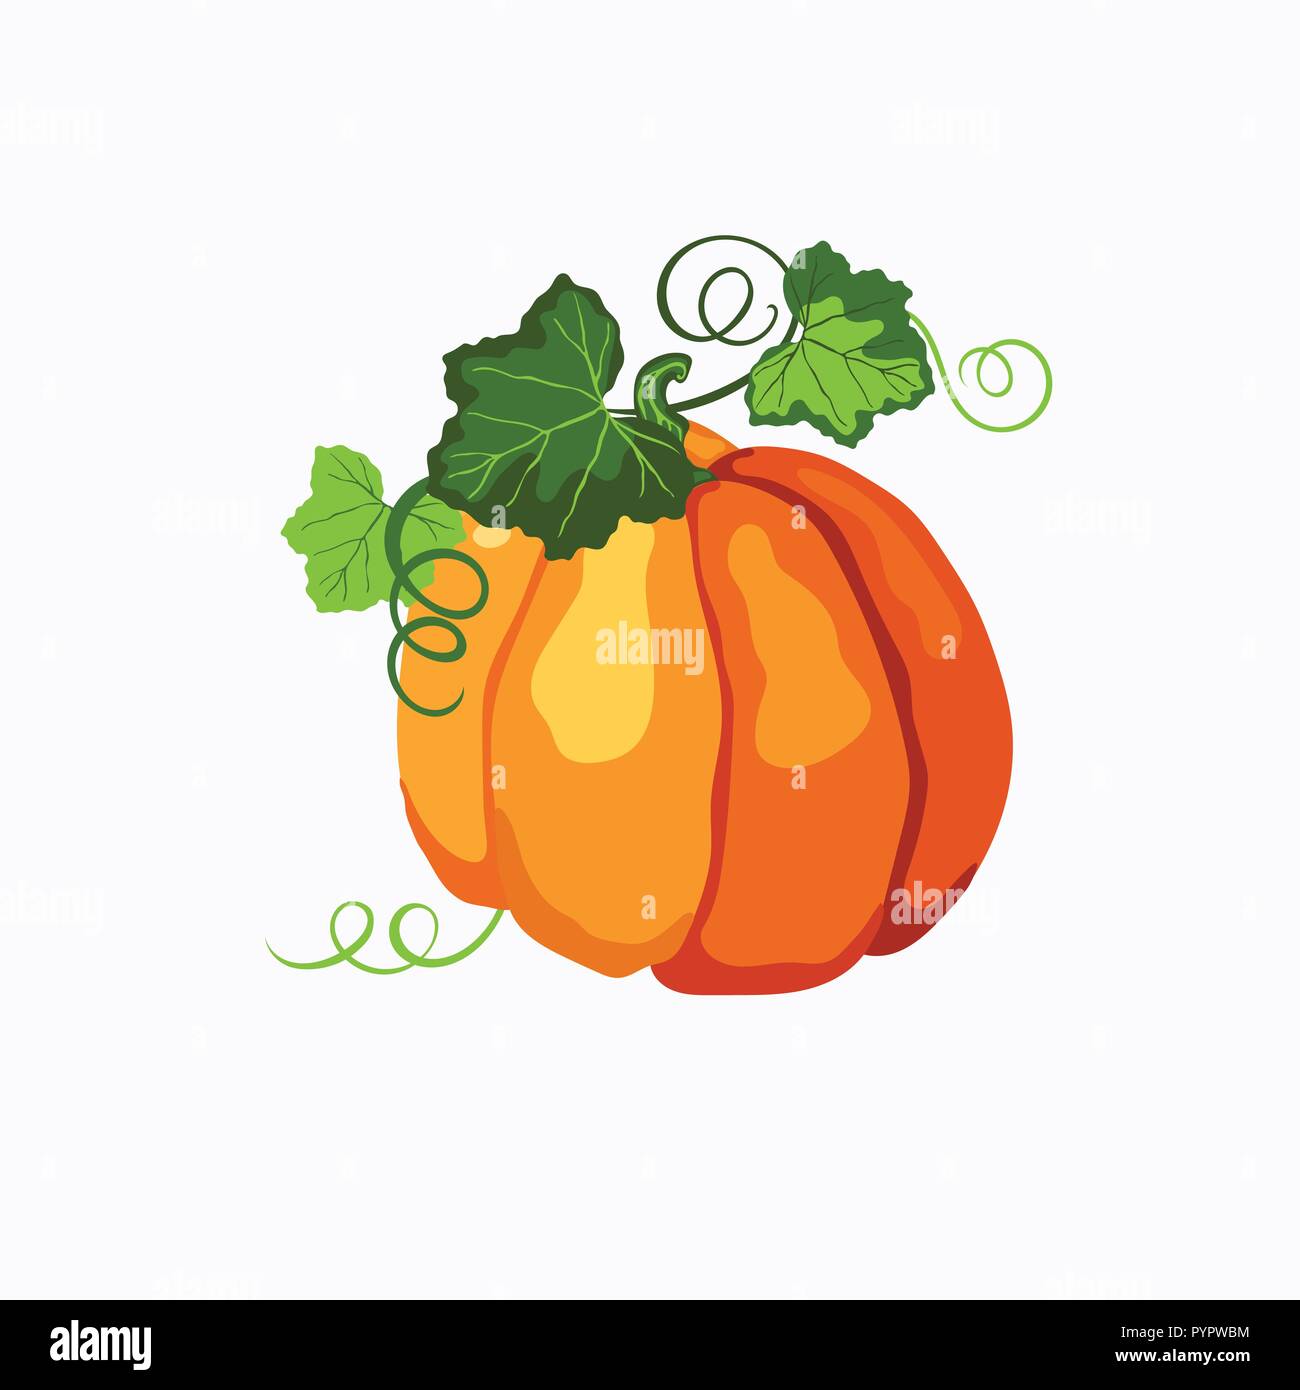 Vector Orange zucca matura con il verde delle foglie e steli isolati su uno sfondo bianco. Halloween, Ringraziamento, simbolo d'autunno. Illustrazione Vettoriale